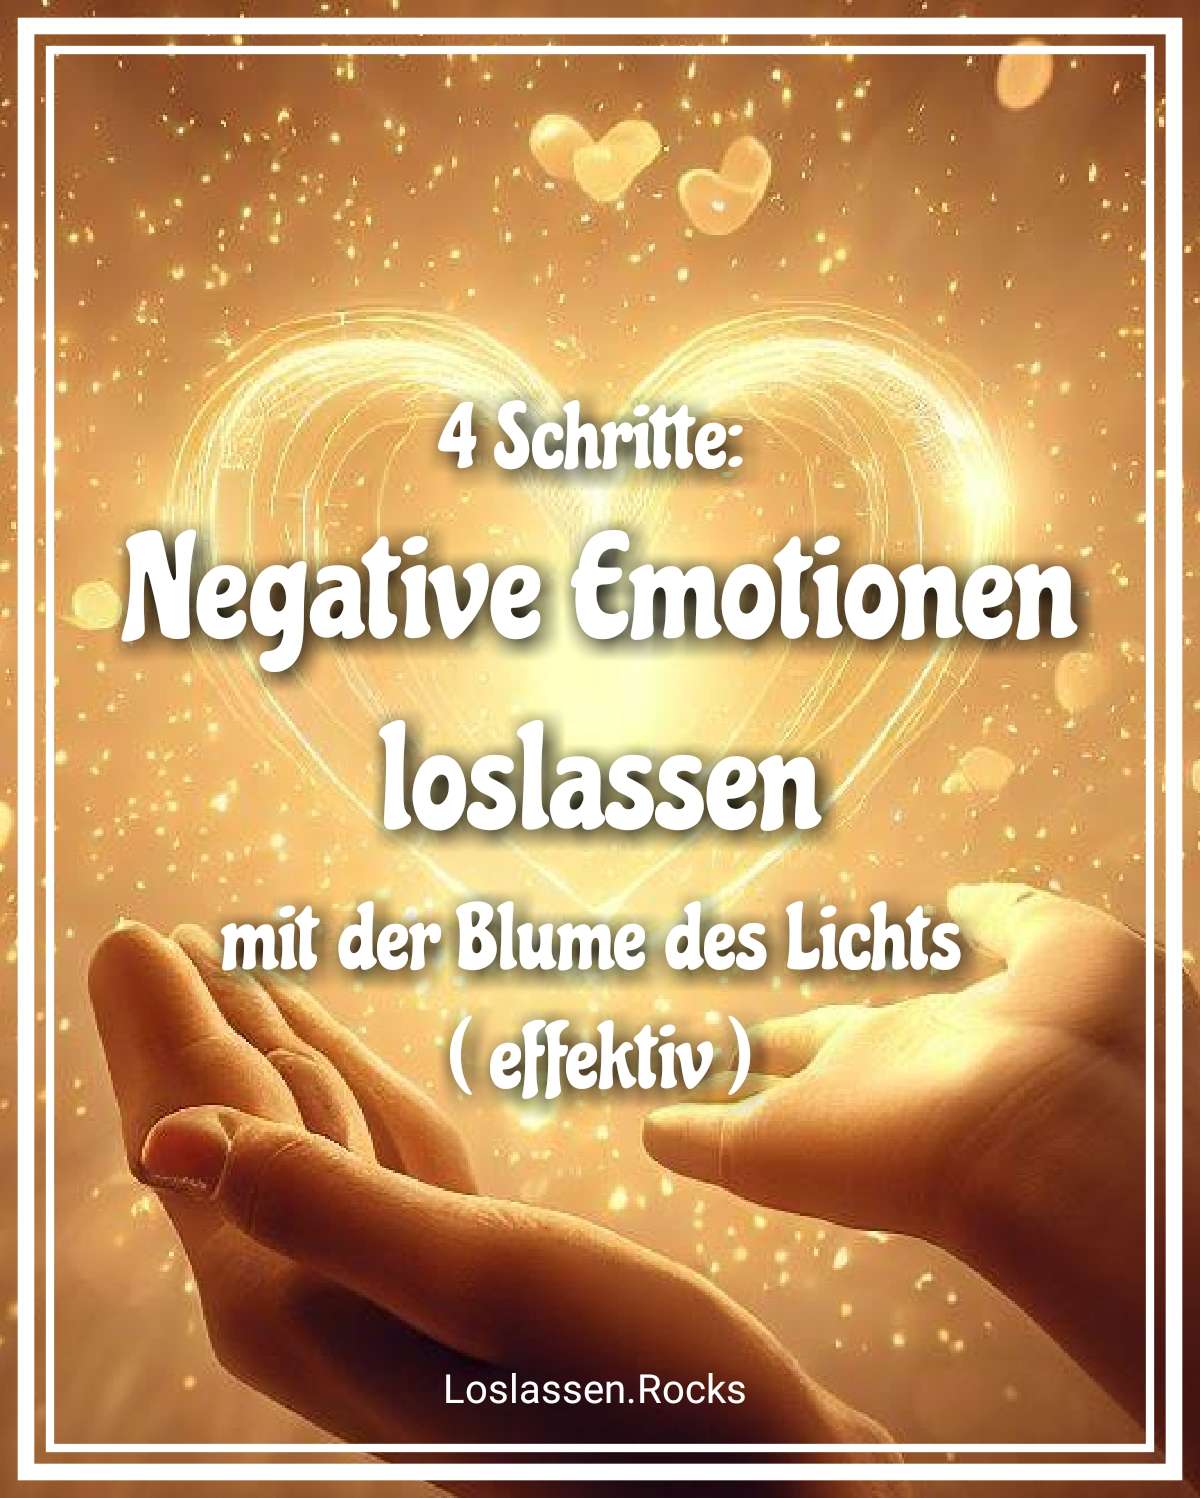 4 Schritte: Negative Emotionen loslassen mit der Blume des Lichtes ( effektiv )